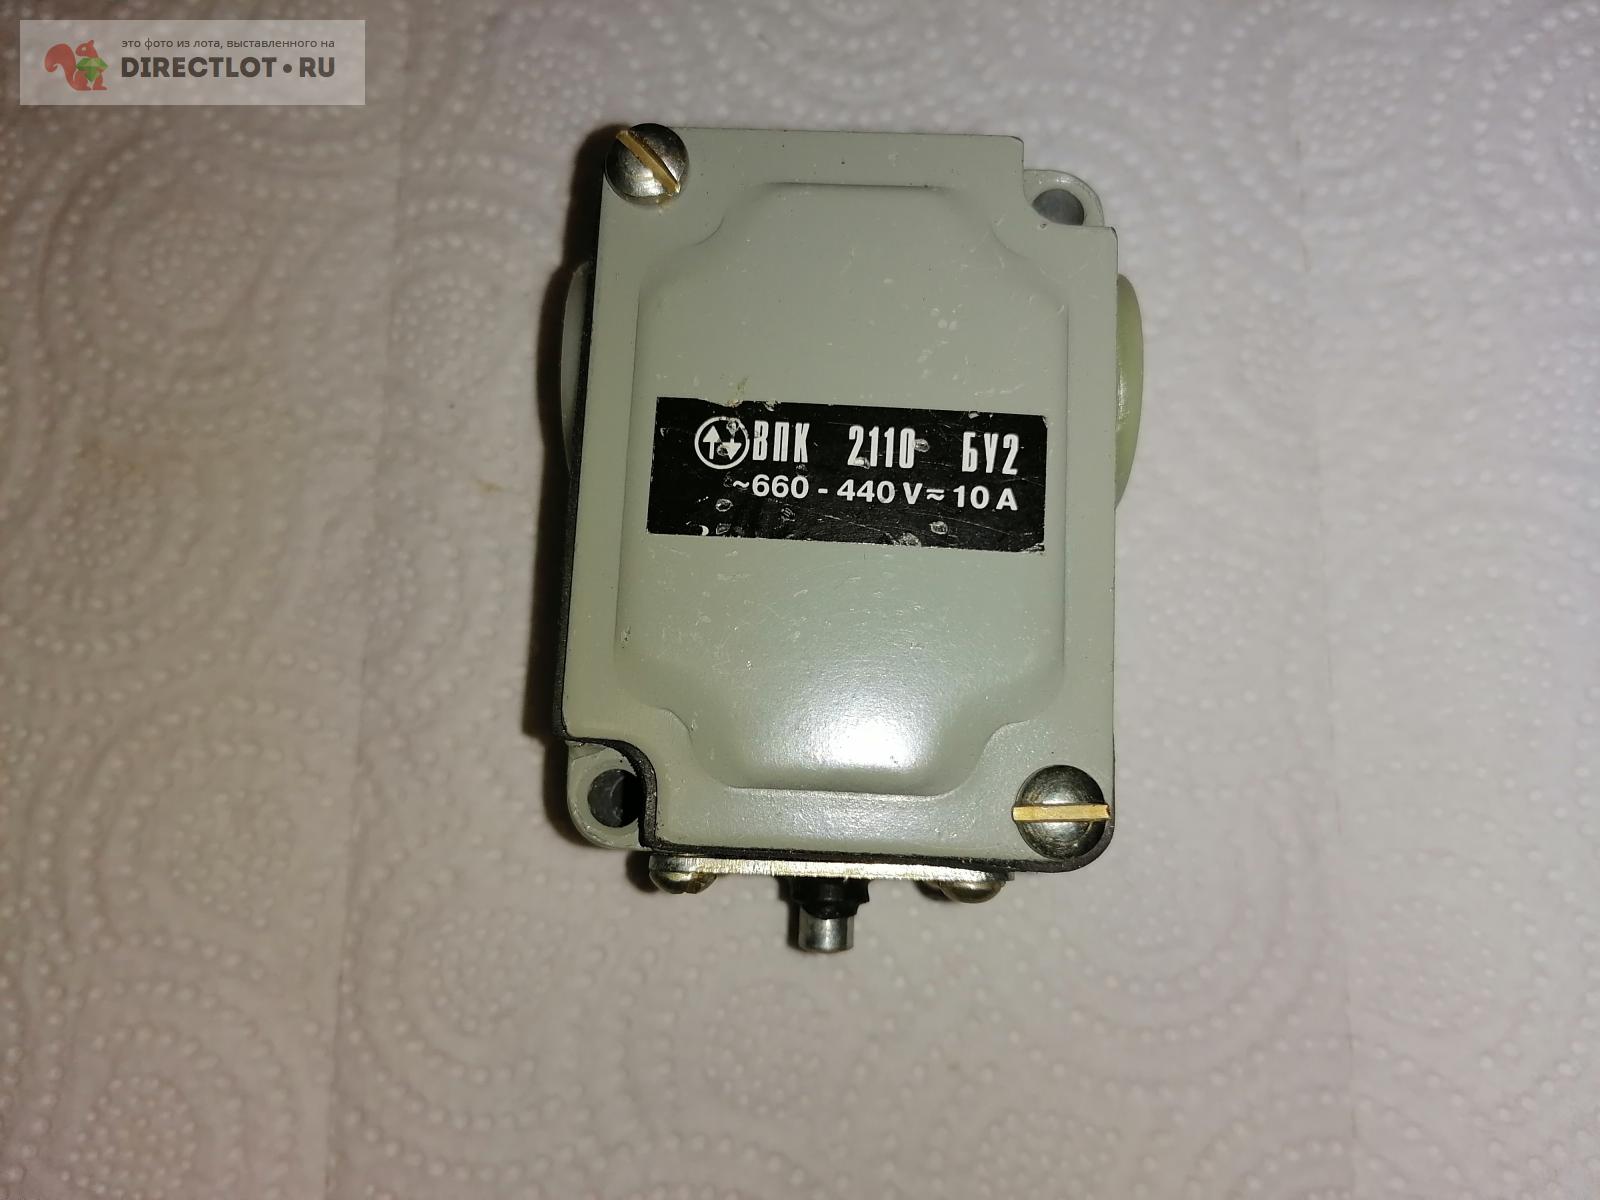 Концевой выключатель ВПК 2110 БУ2 660-440V  в Самаре цена 285 Р .